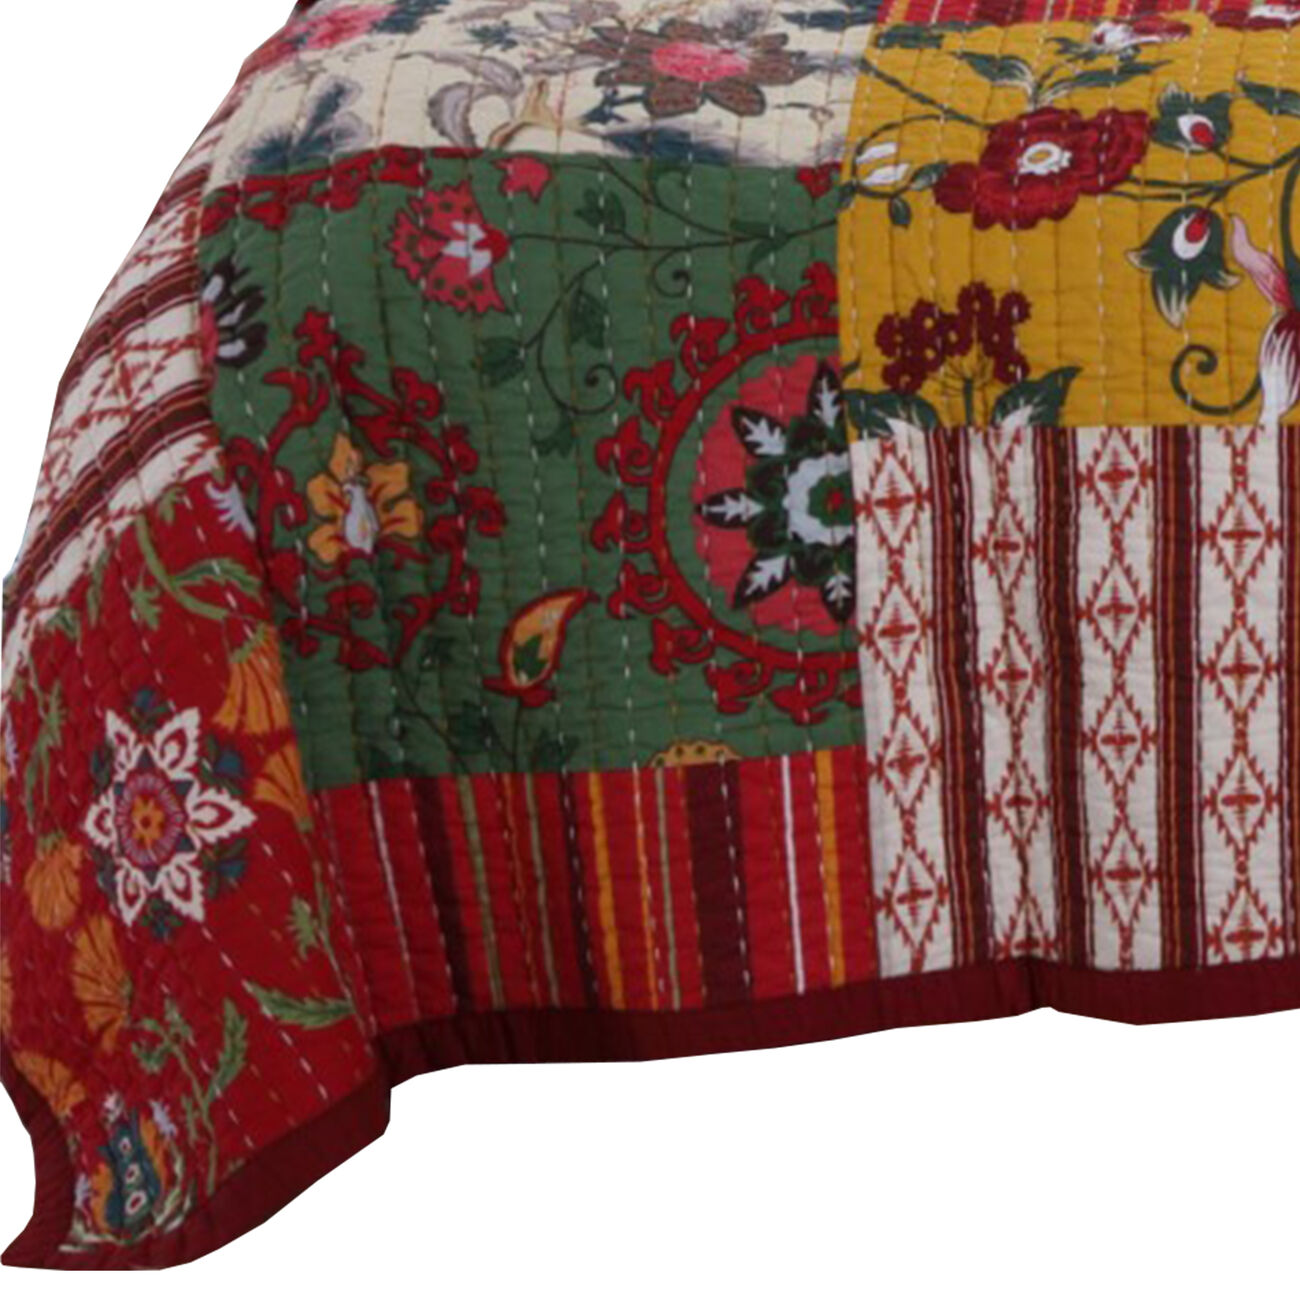 Portland 3 Piece Queen Size Cotton Quilt Set with Floral Print, Multicolor